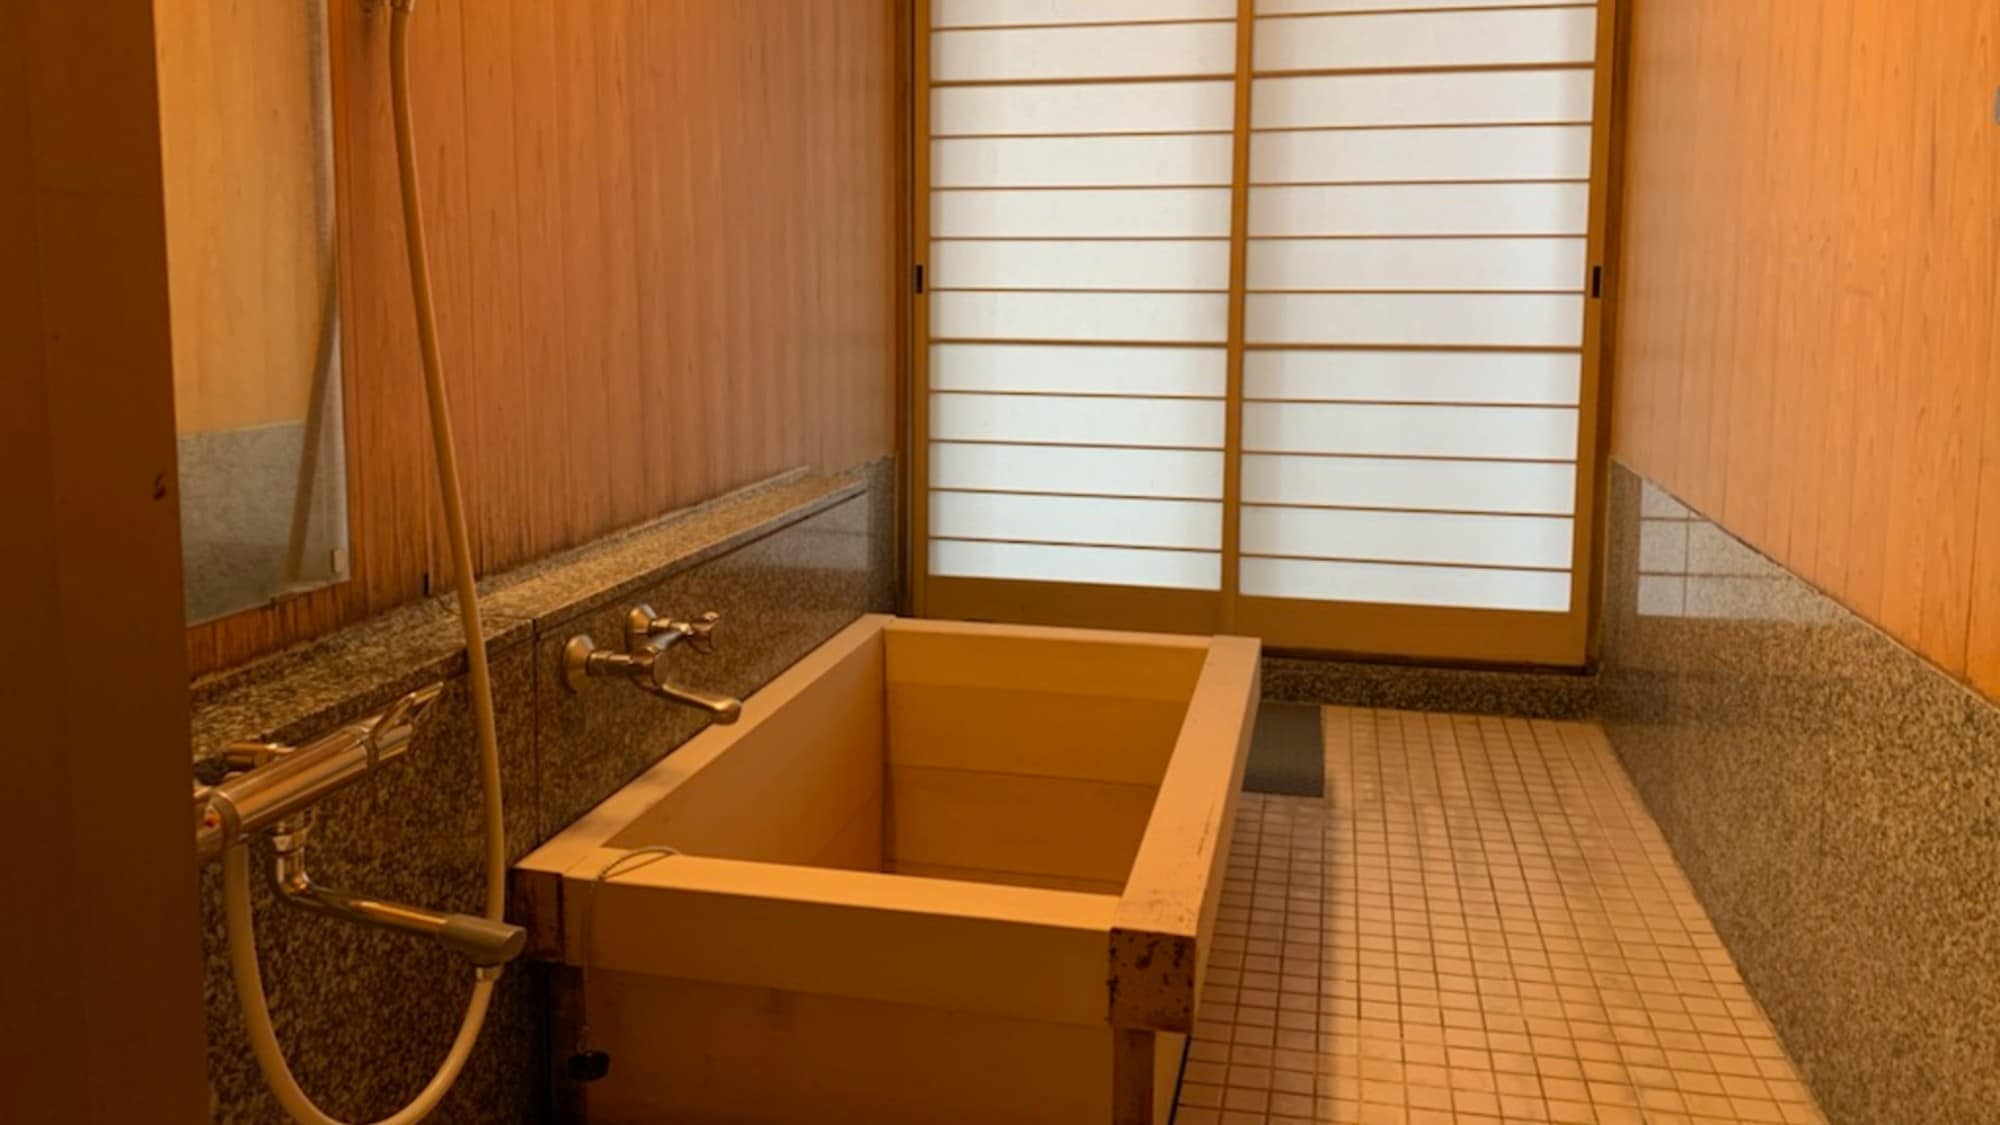 [ห้องสไตล์ญี่ปุ่นพร้อมห้องอาบน้ำแบบเปิดโล่ง] 2 ห้องต่อเนื่อง / 12 เสื่อทาทามิ + 6 เสื่อทาทามิ ห้องปลอดบุหรี่